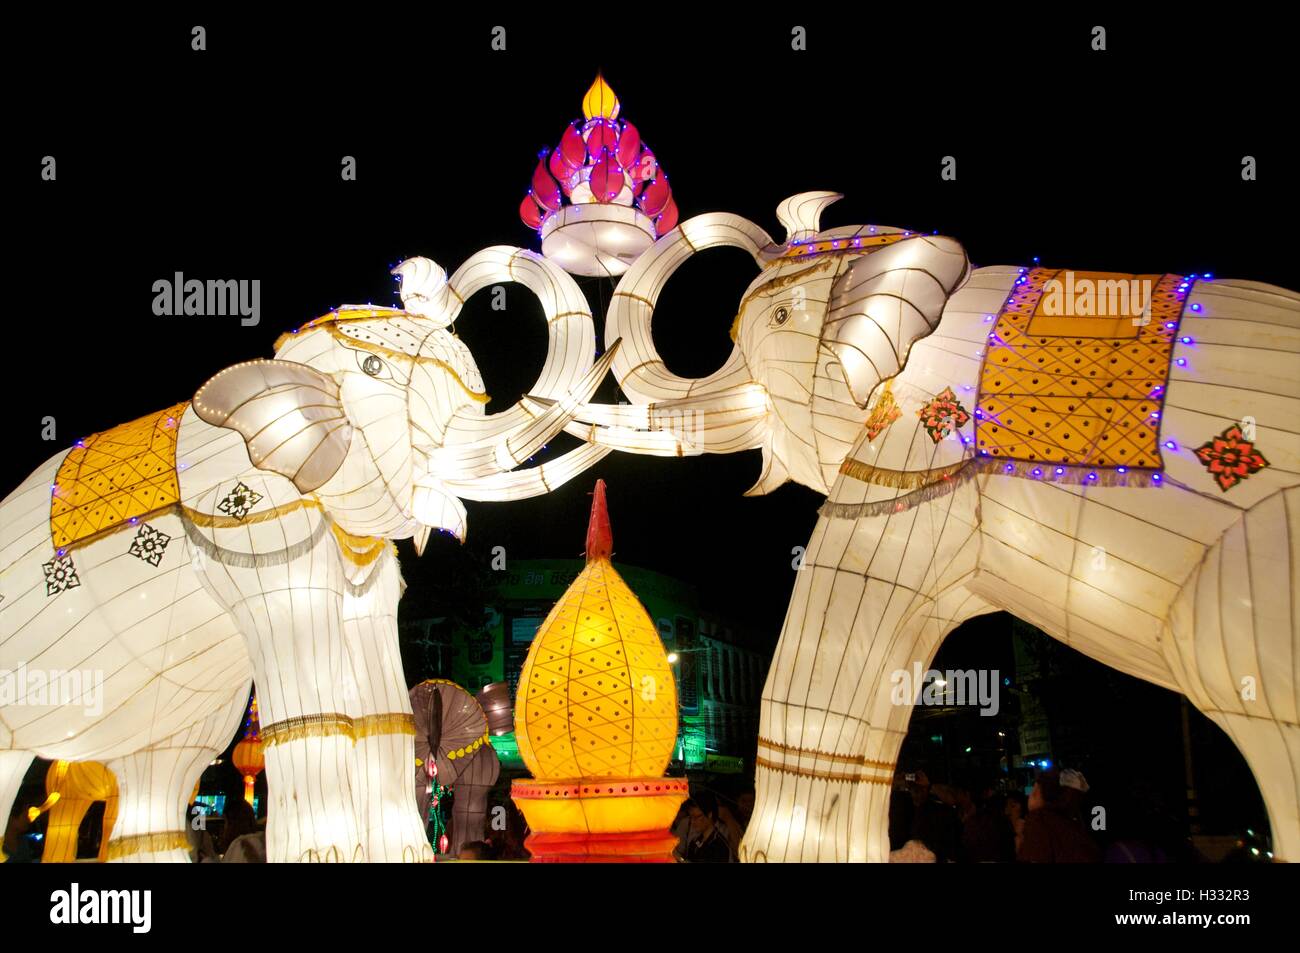 Les éléphants lumineux font partie de la décoration pour le Loy Krathong Festival à Chiang Mai, Thaïlande Banque D'Images